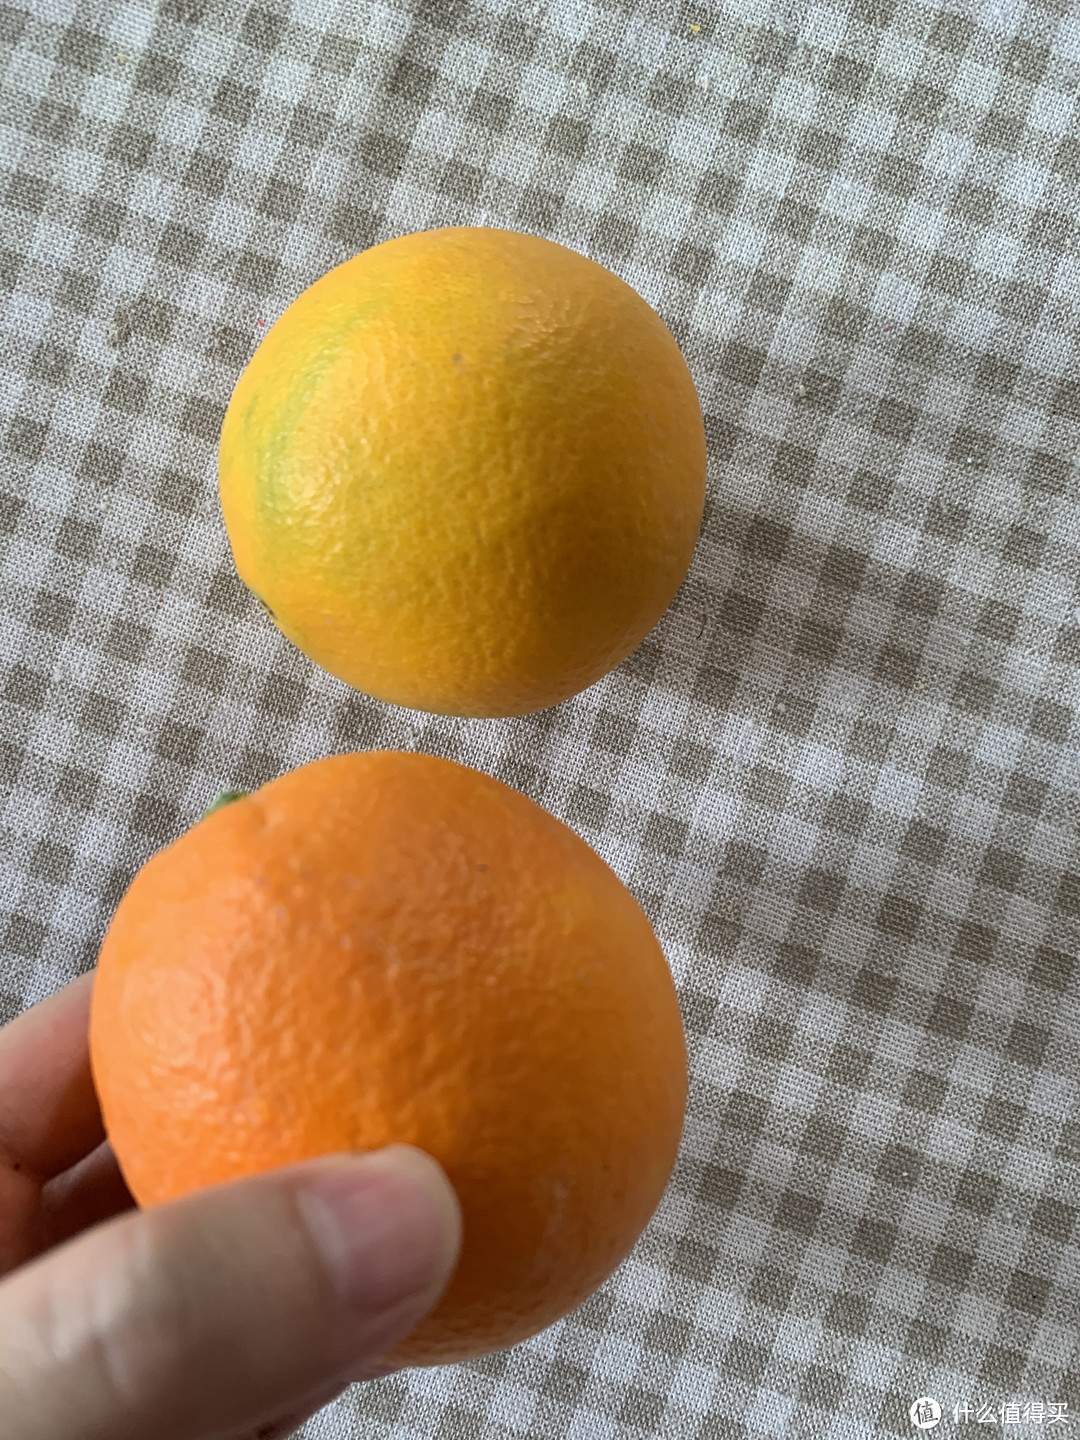 个头不大，但是非常甜的小橙子。